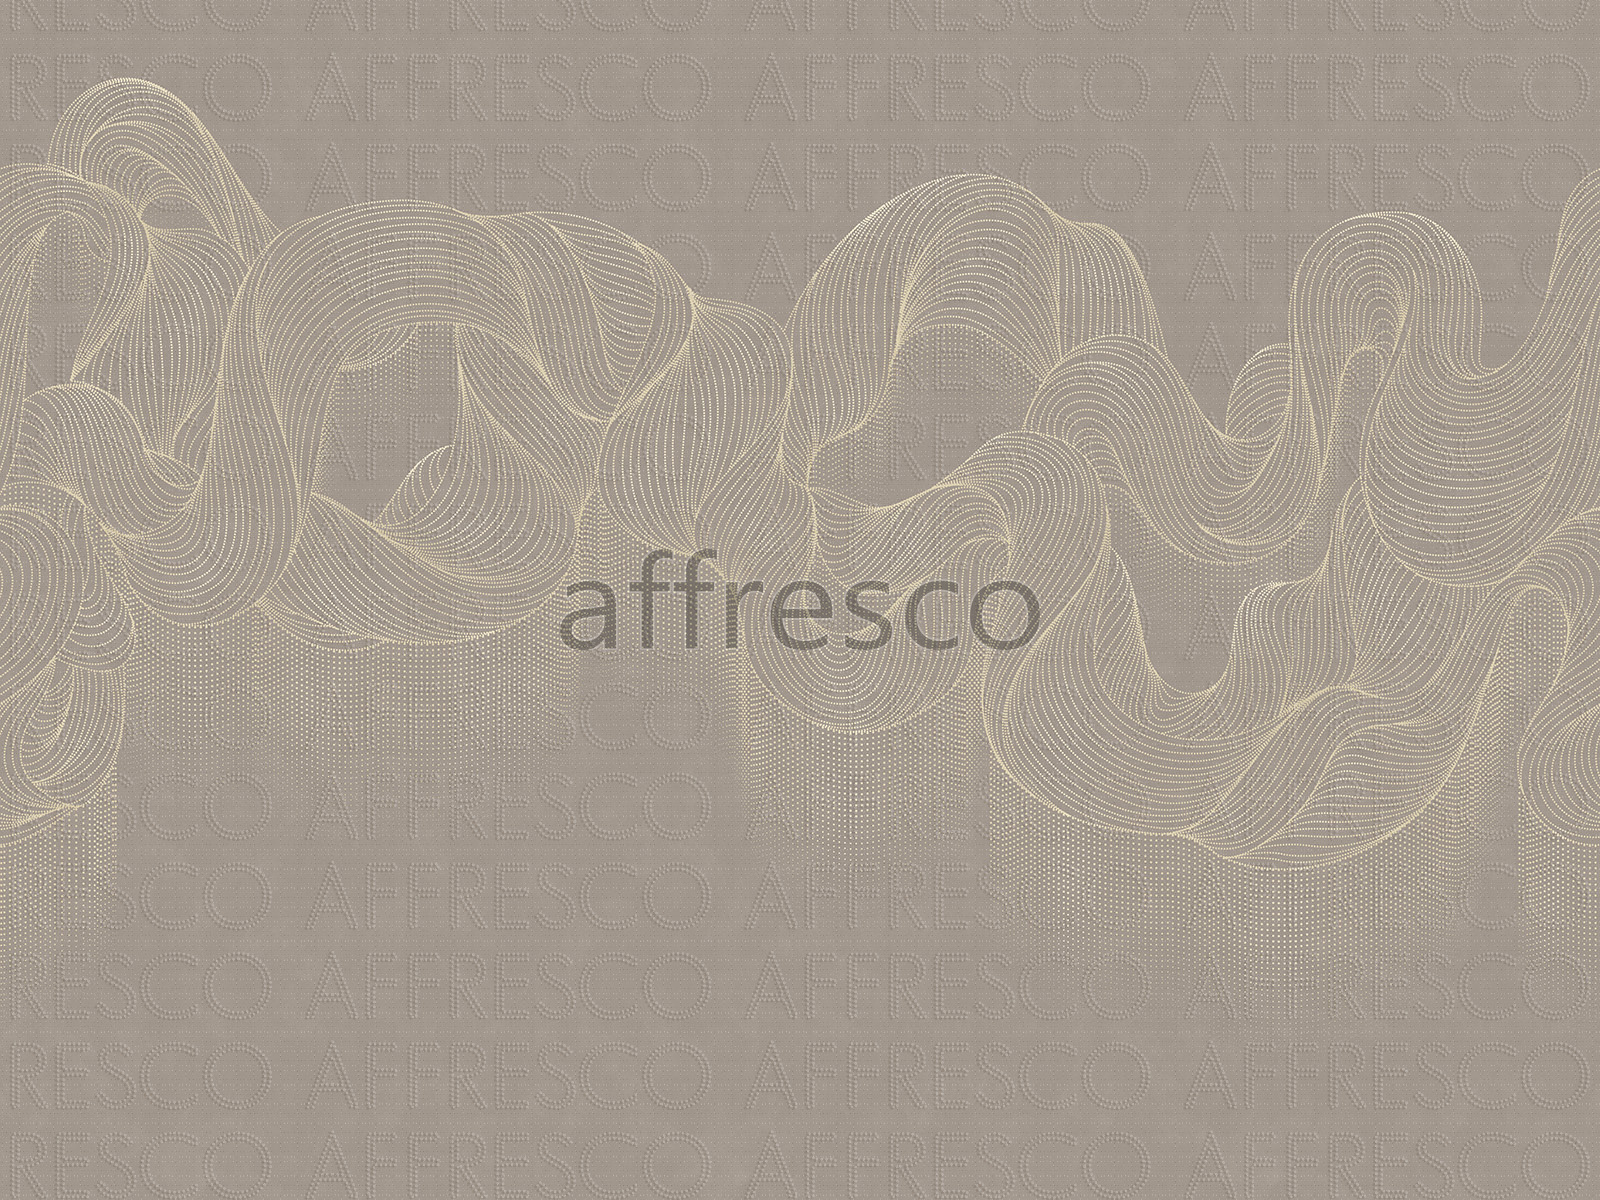 AF2142-COL3 | Line Art | Affresco Factory